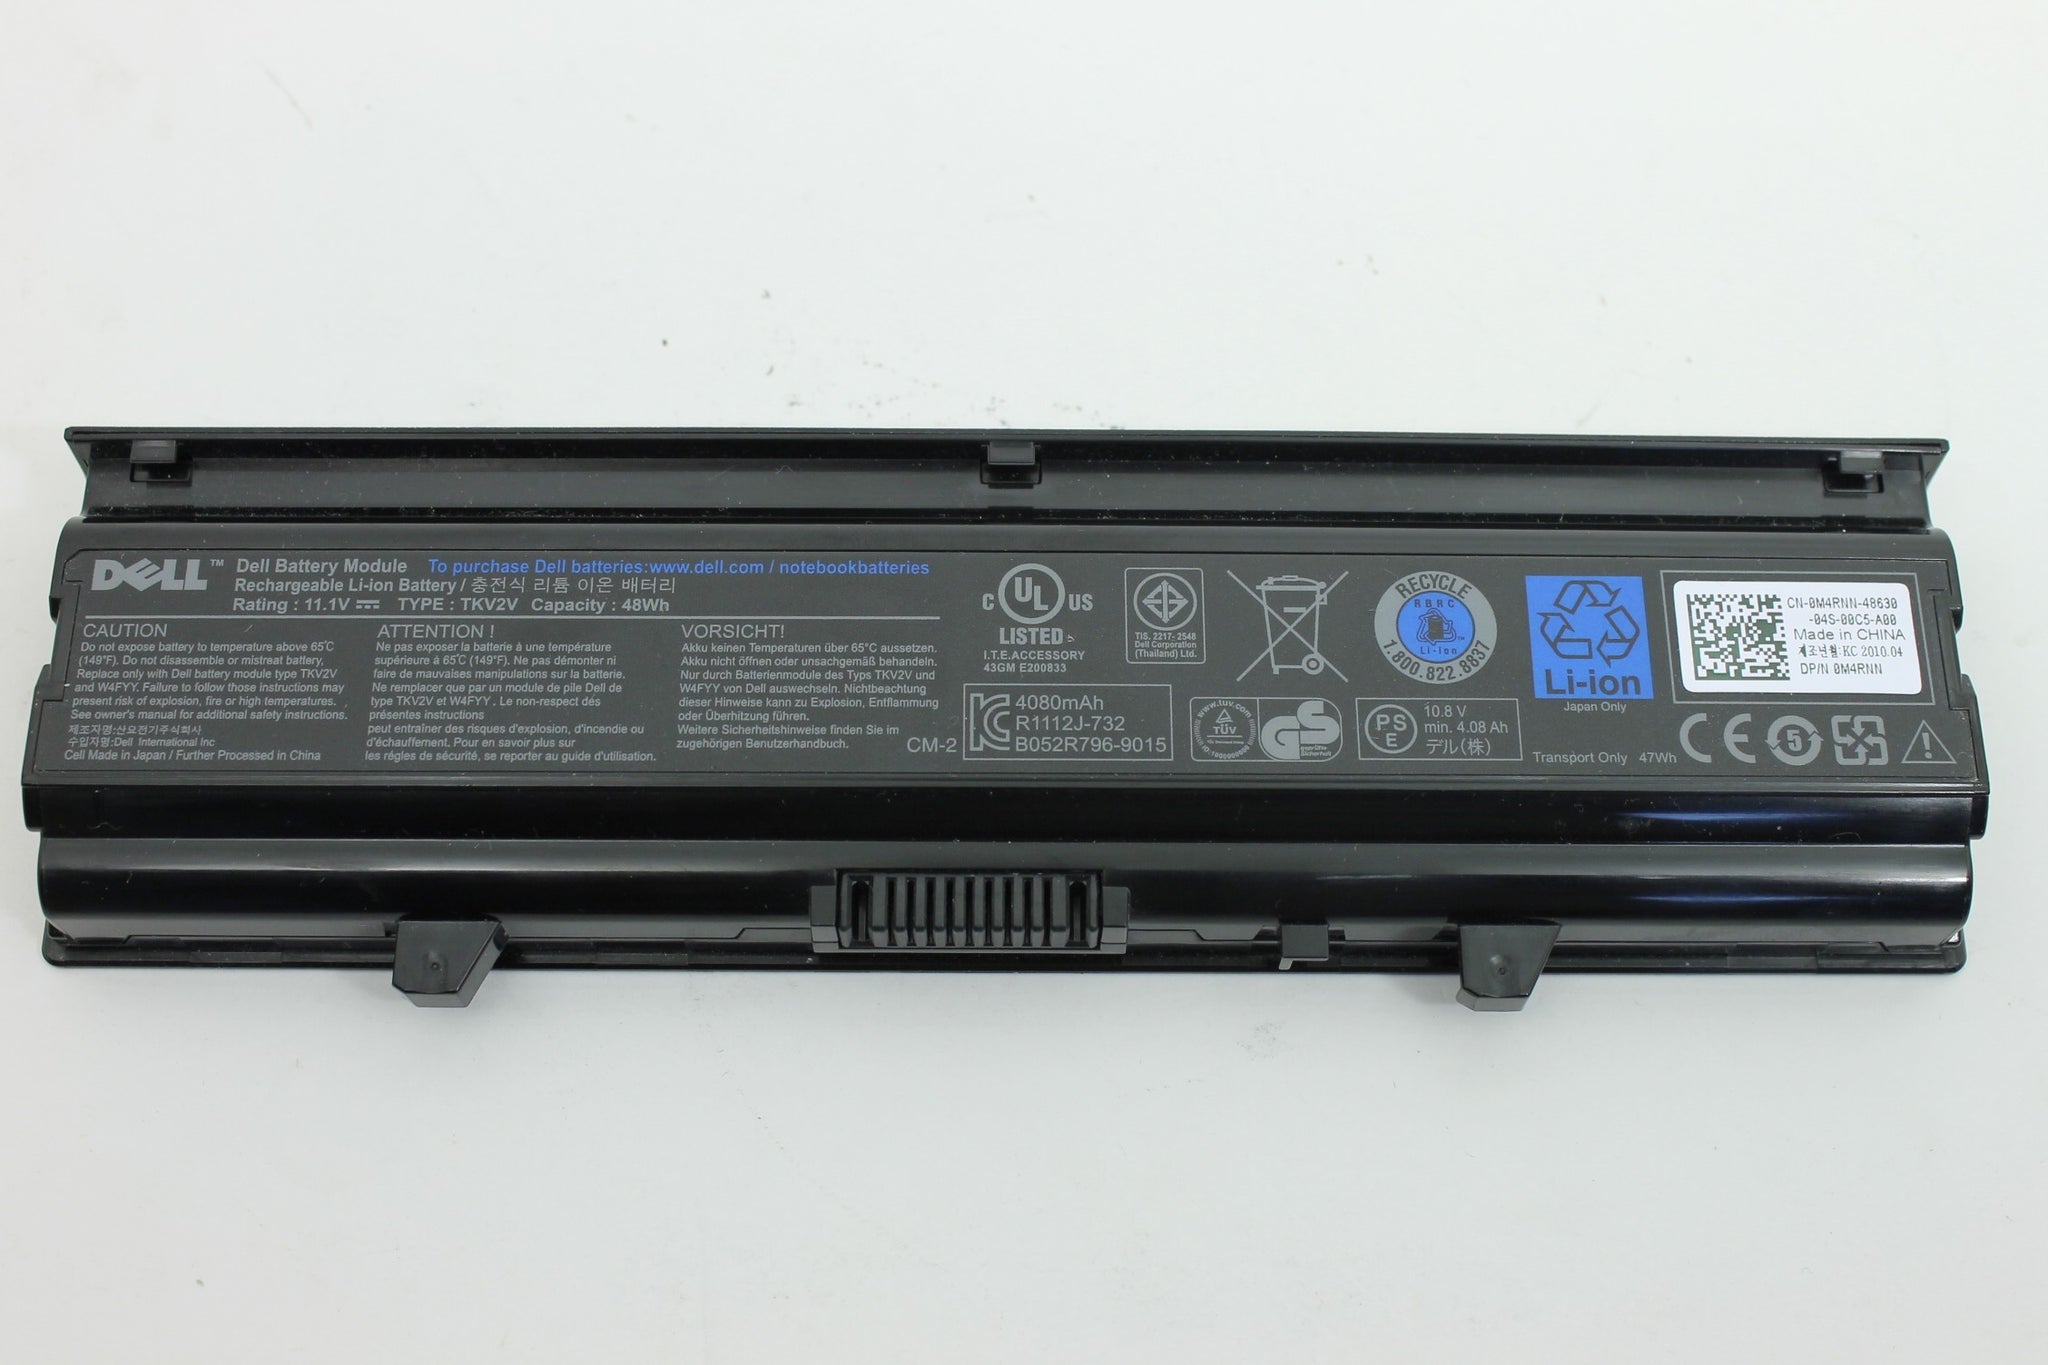 Original TKV2V laptop battery for Dell Inspiron N4030D N4030 N4020 NM4010